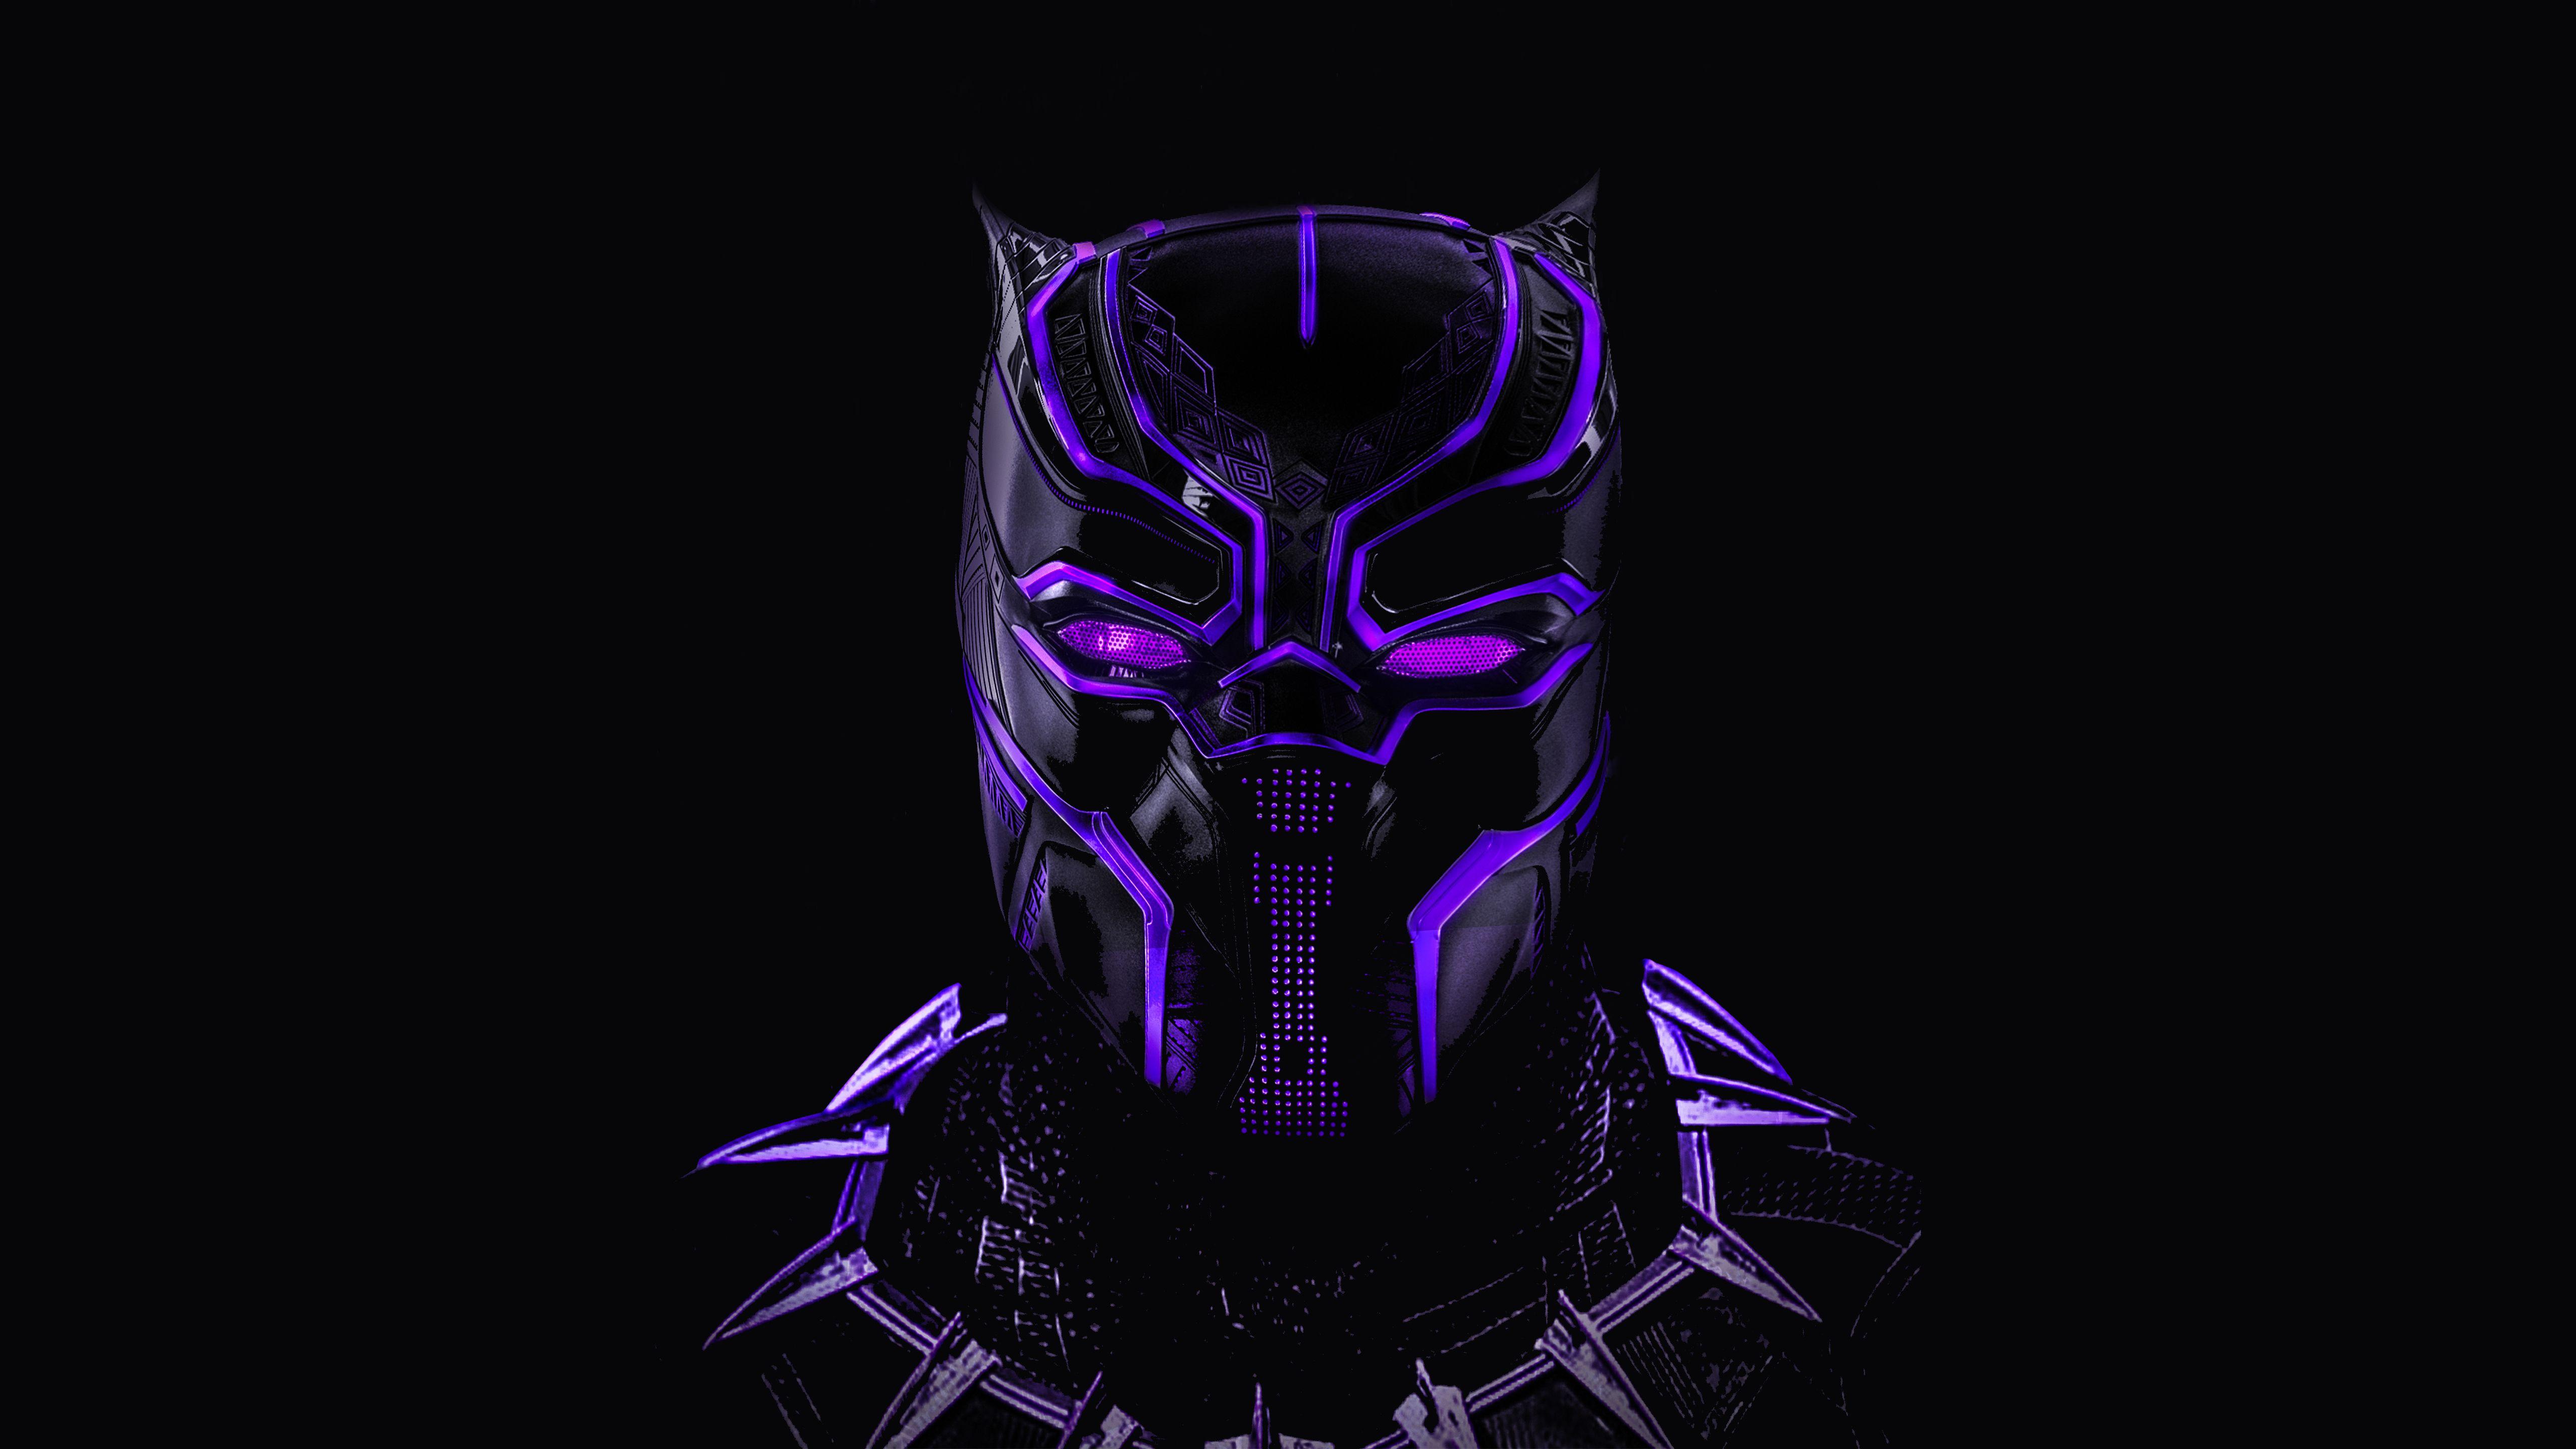 Black Panther Wallpaper Free Black Panther Background